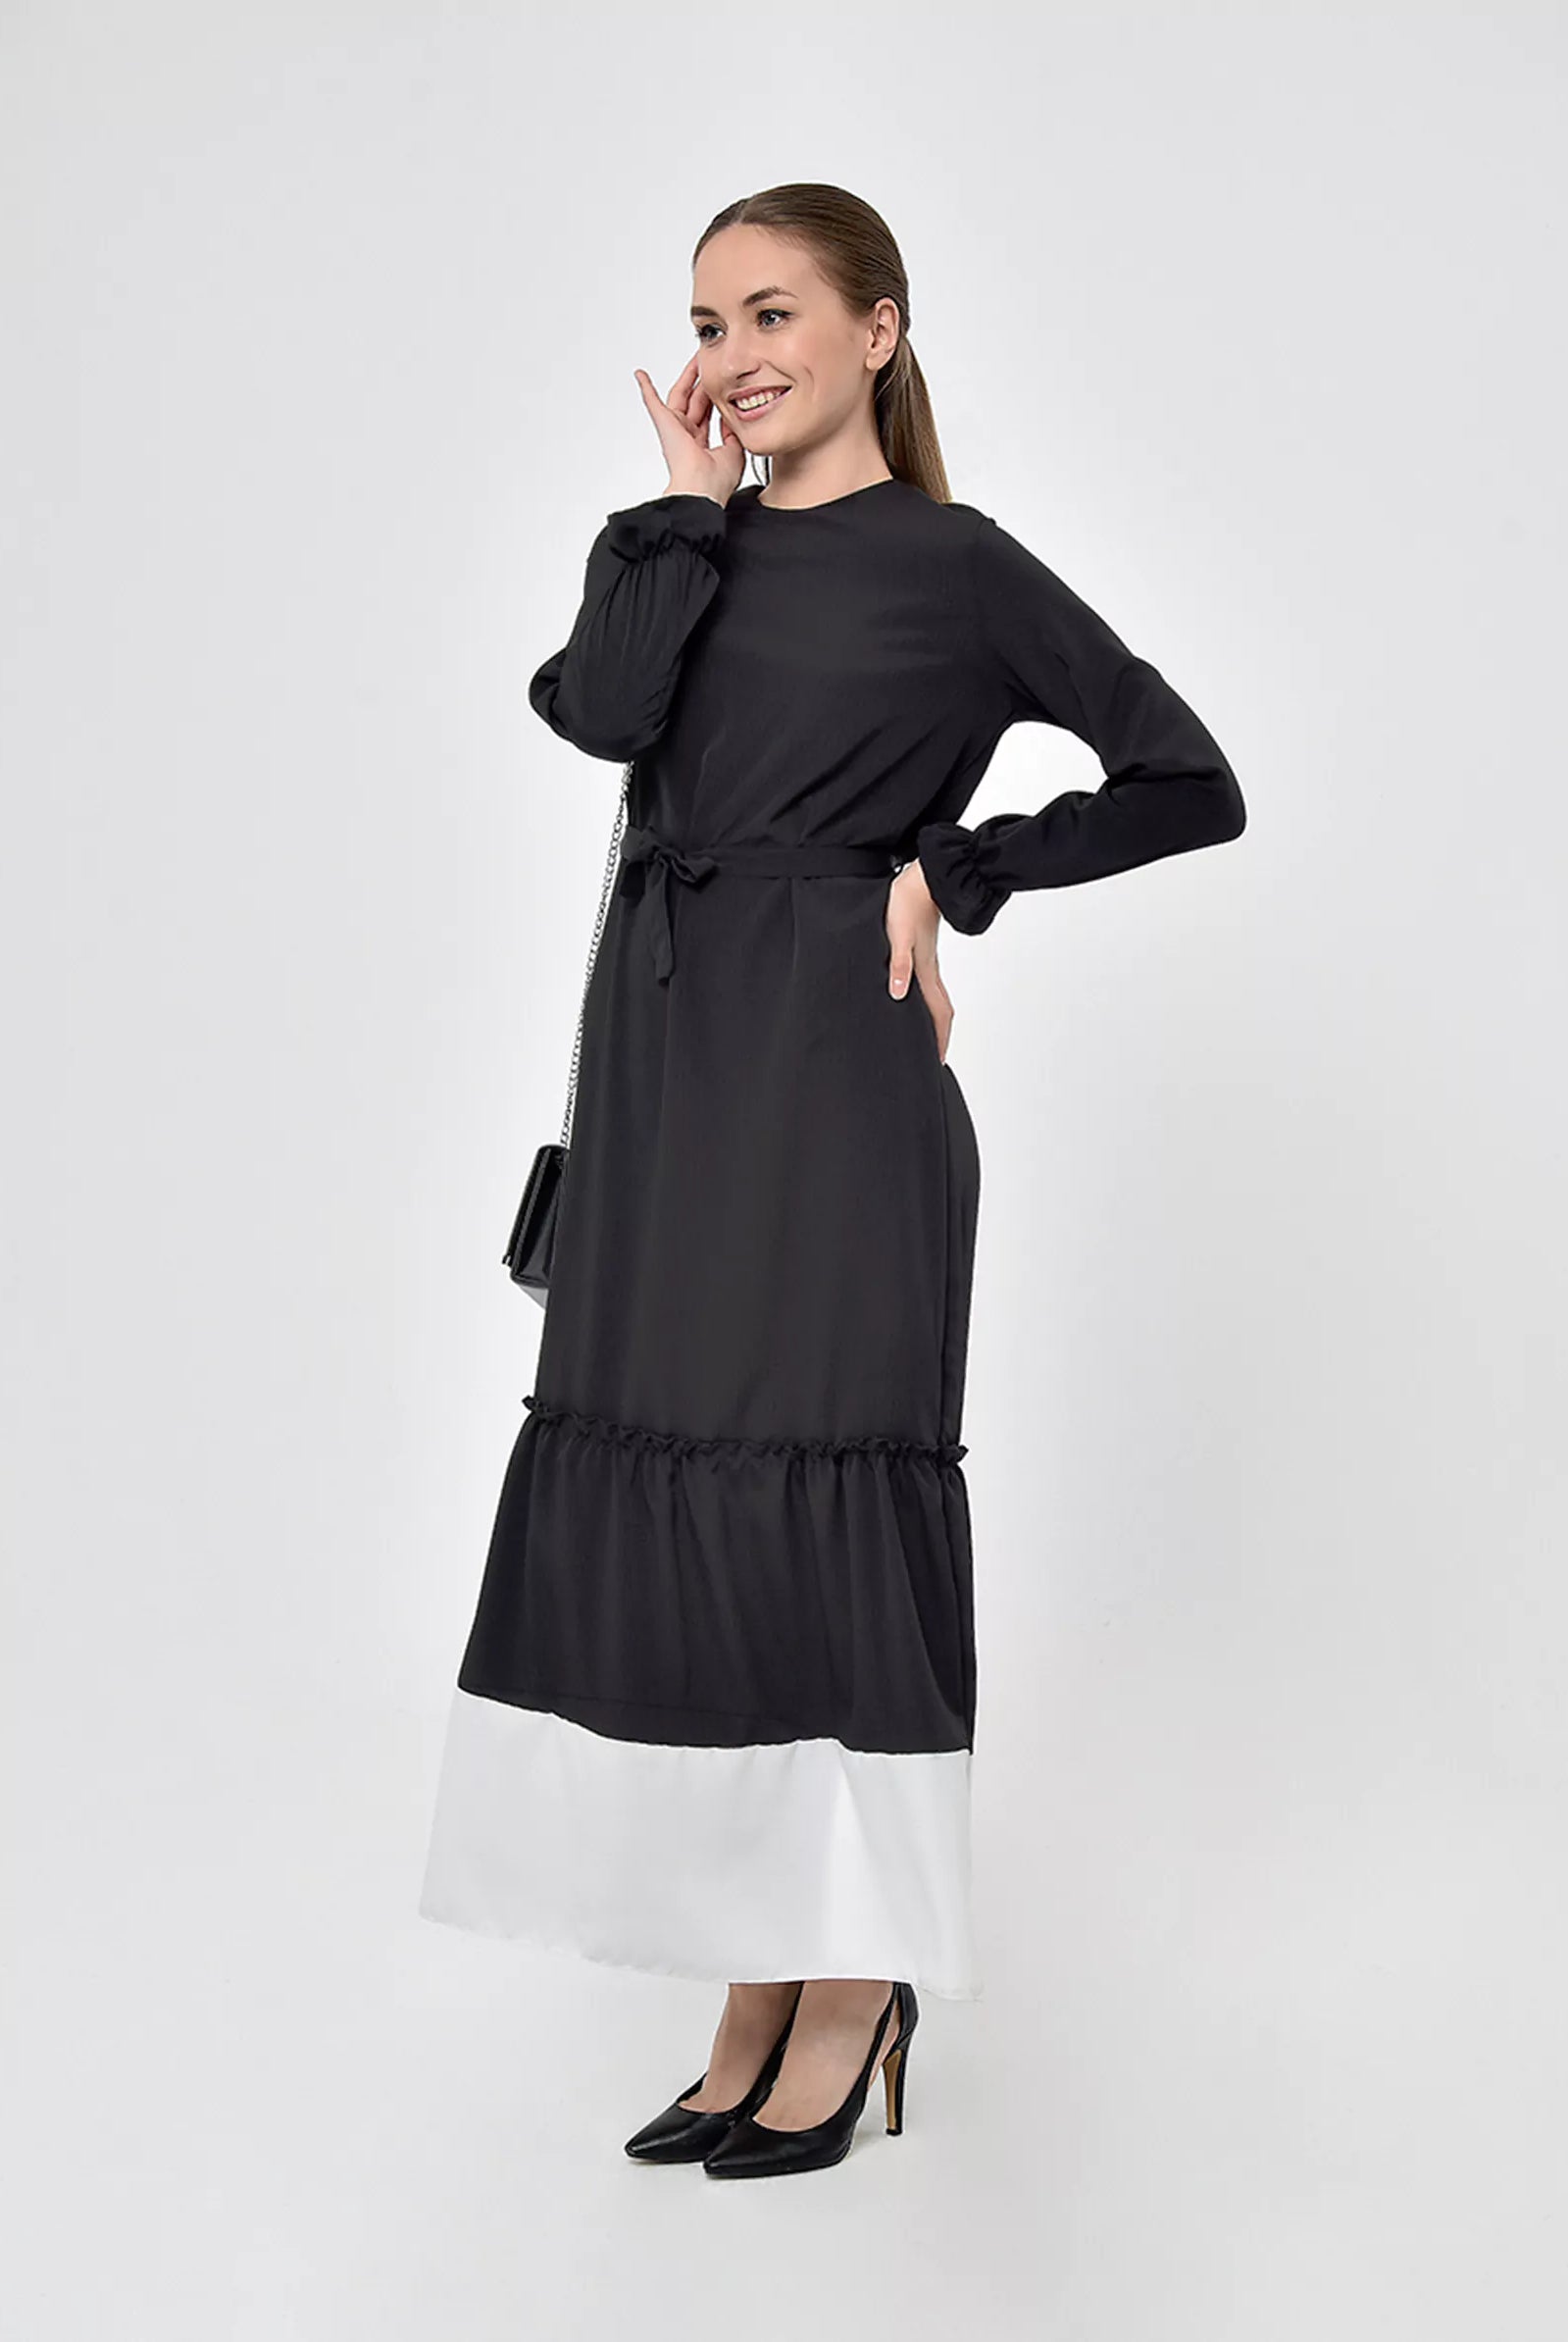 black flared skirt dress